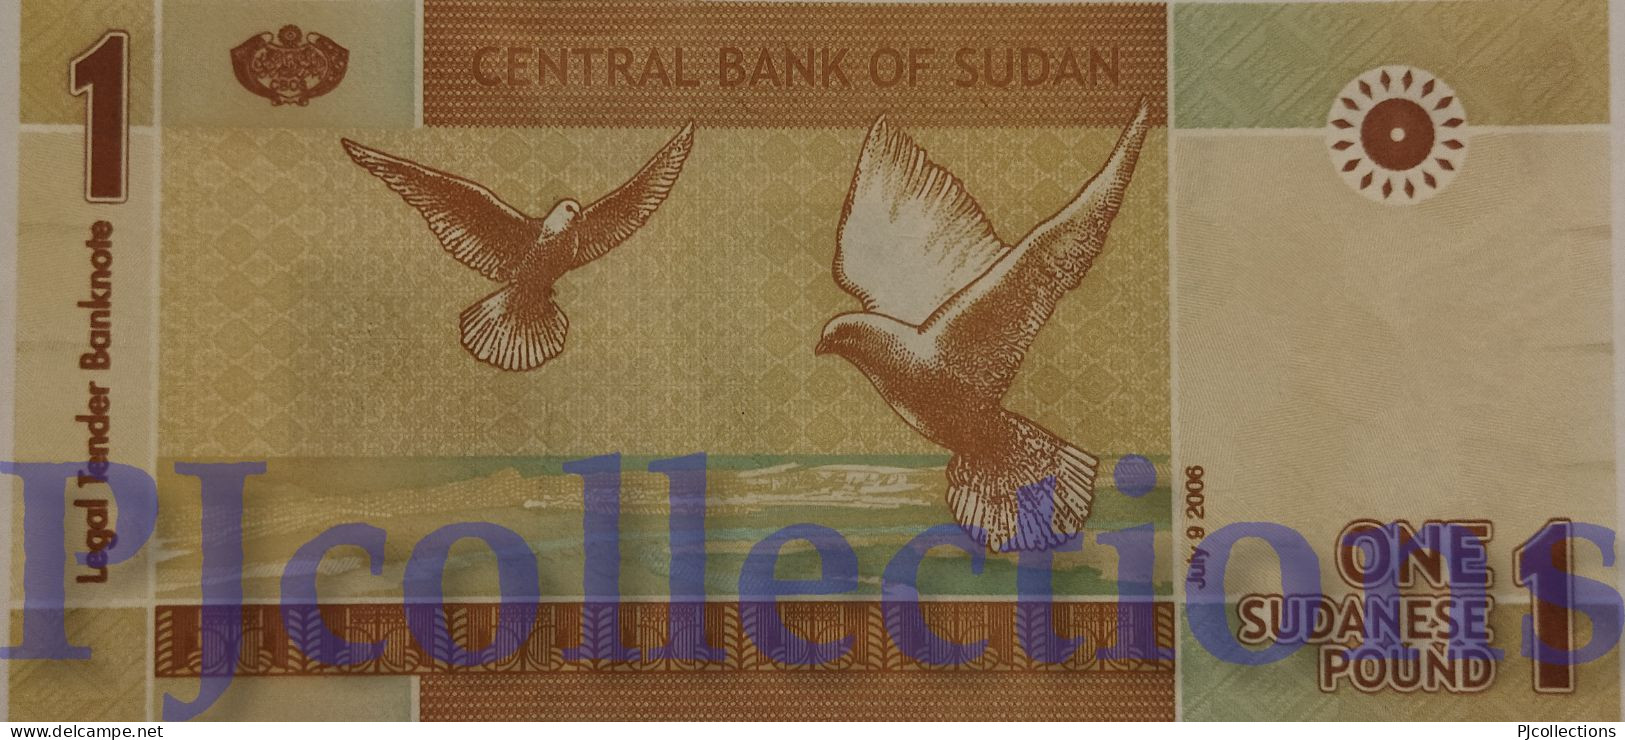 SUDAN 1 DINAR 2006 PICK 64 UNC LOW AND GOOD SERIAL NUMBER "AA00015015" - Soedan